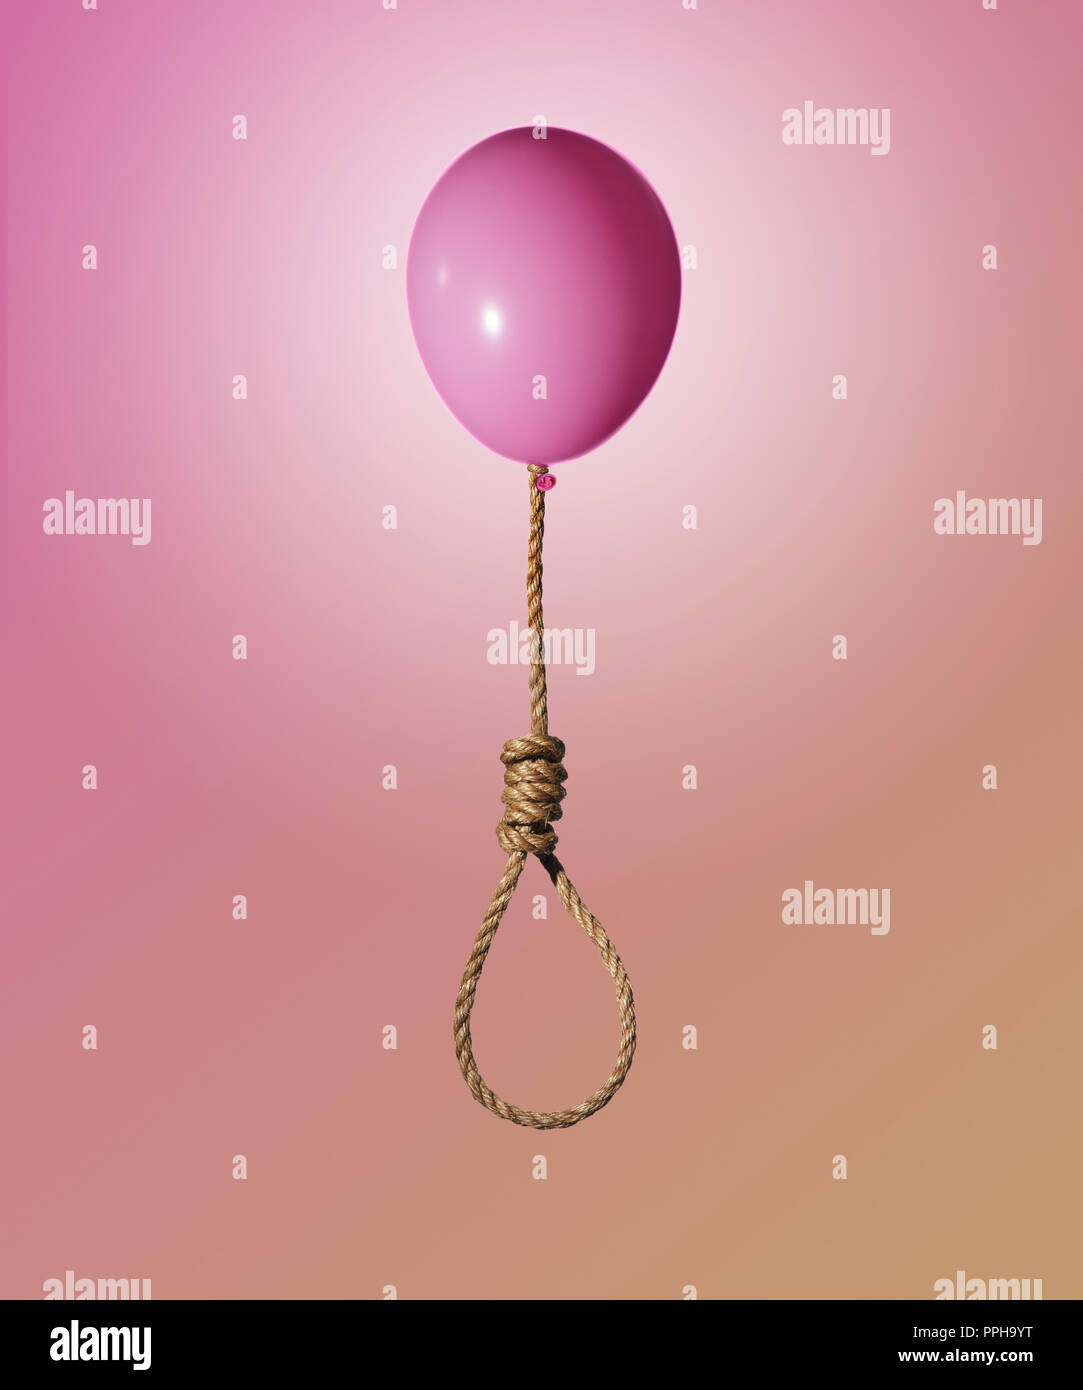 Ballon rose levage d'une corde de jute et de potence noeud concept Banque D'Images